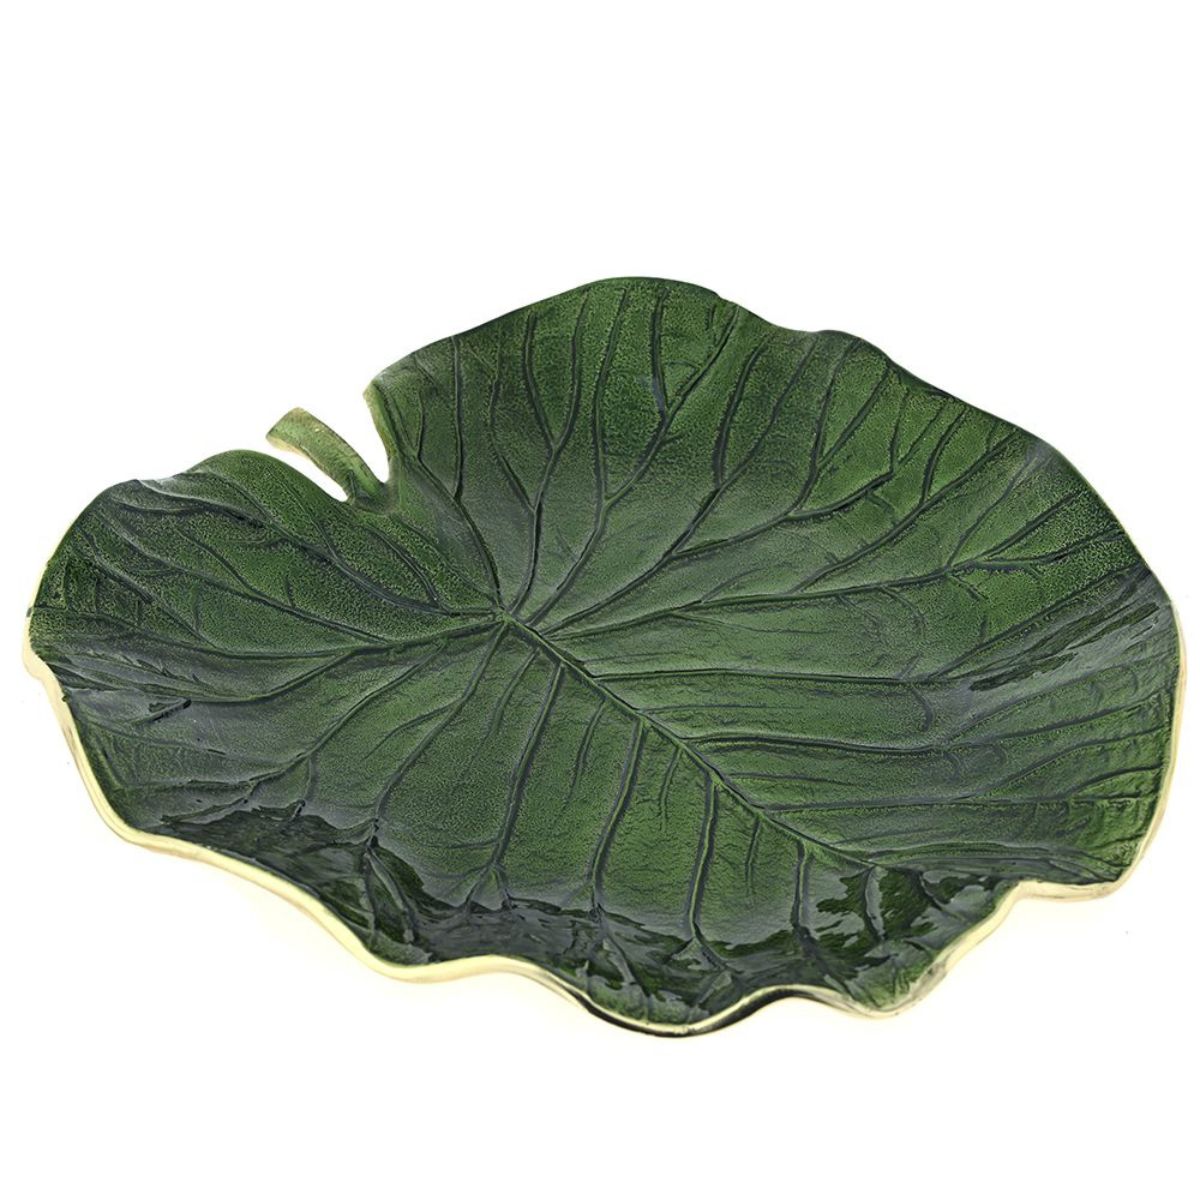 Μία μεταλλική πιατέλα σε σχήμα φύλλου με πράσινη επίστρωση σμάλτου